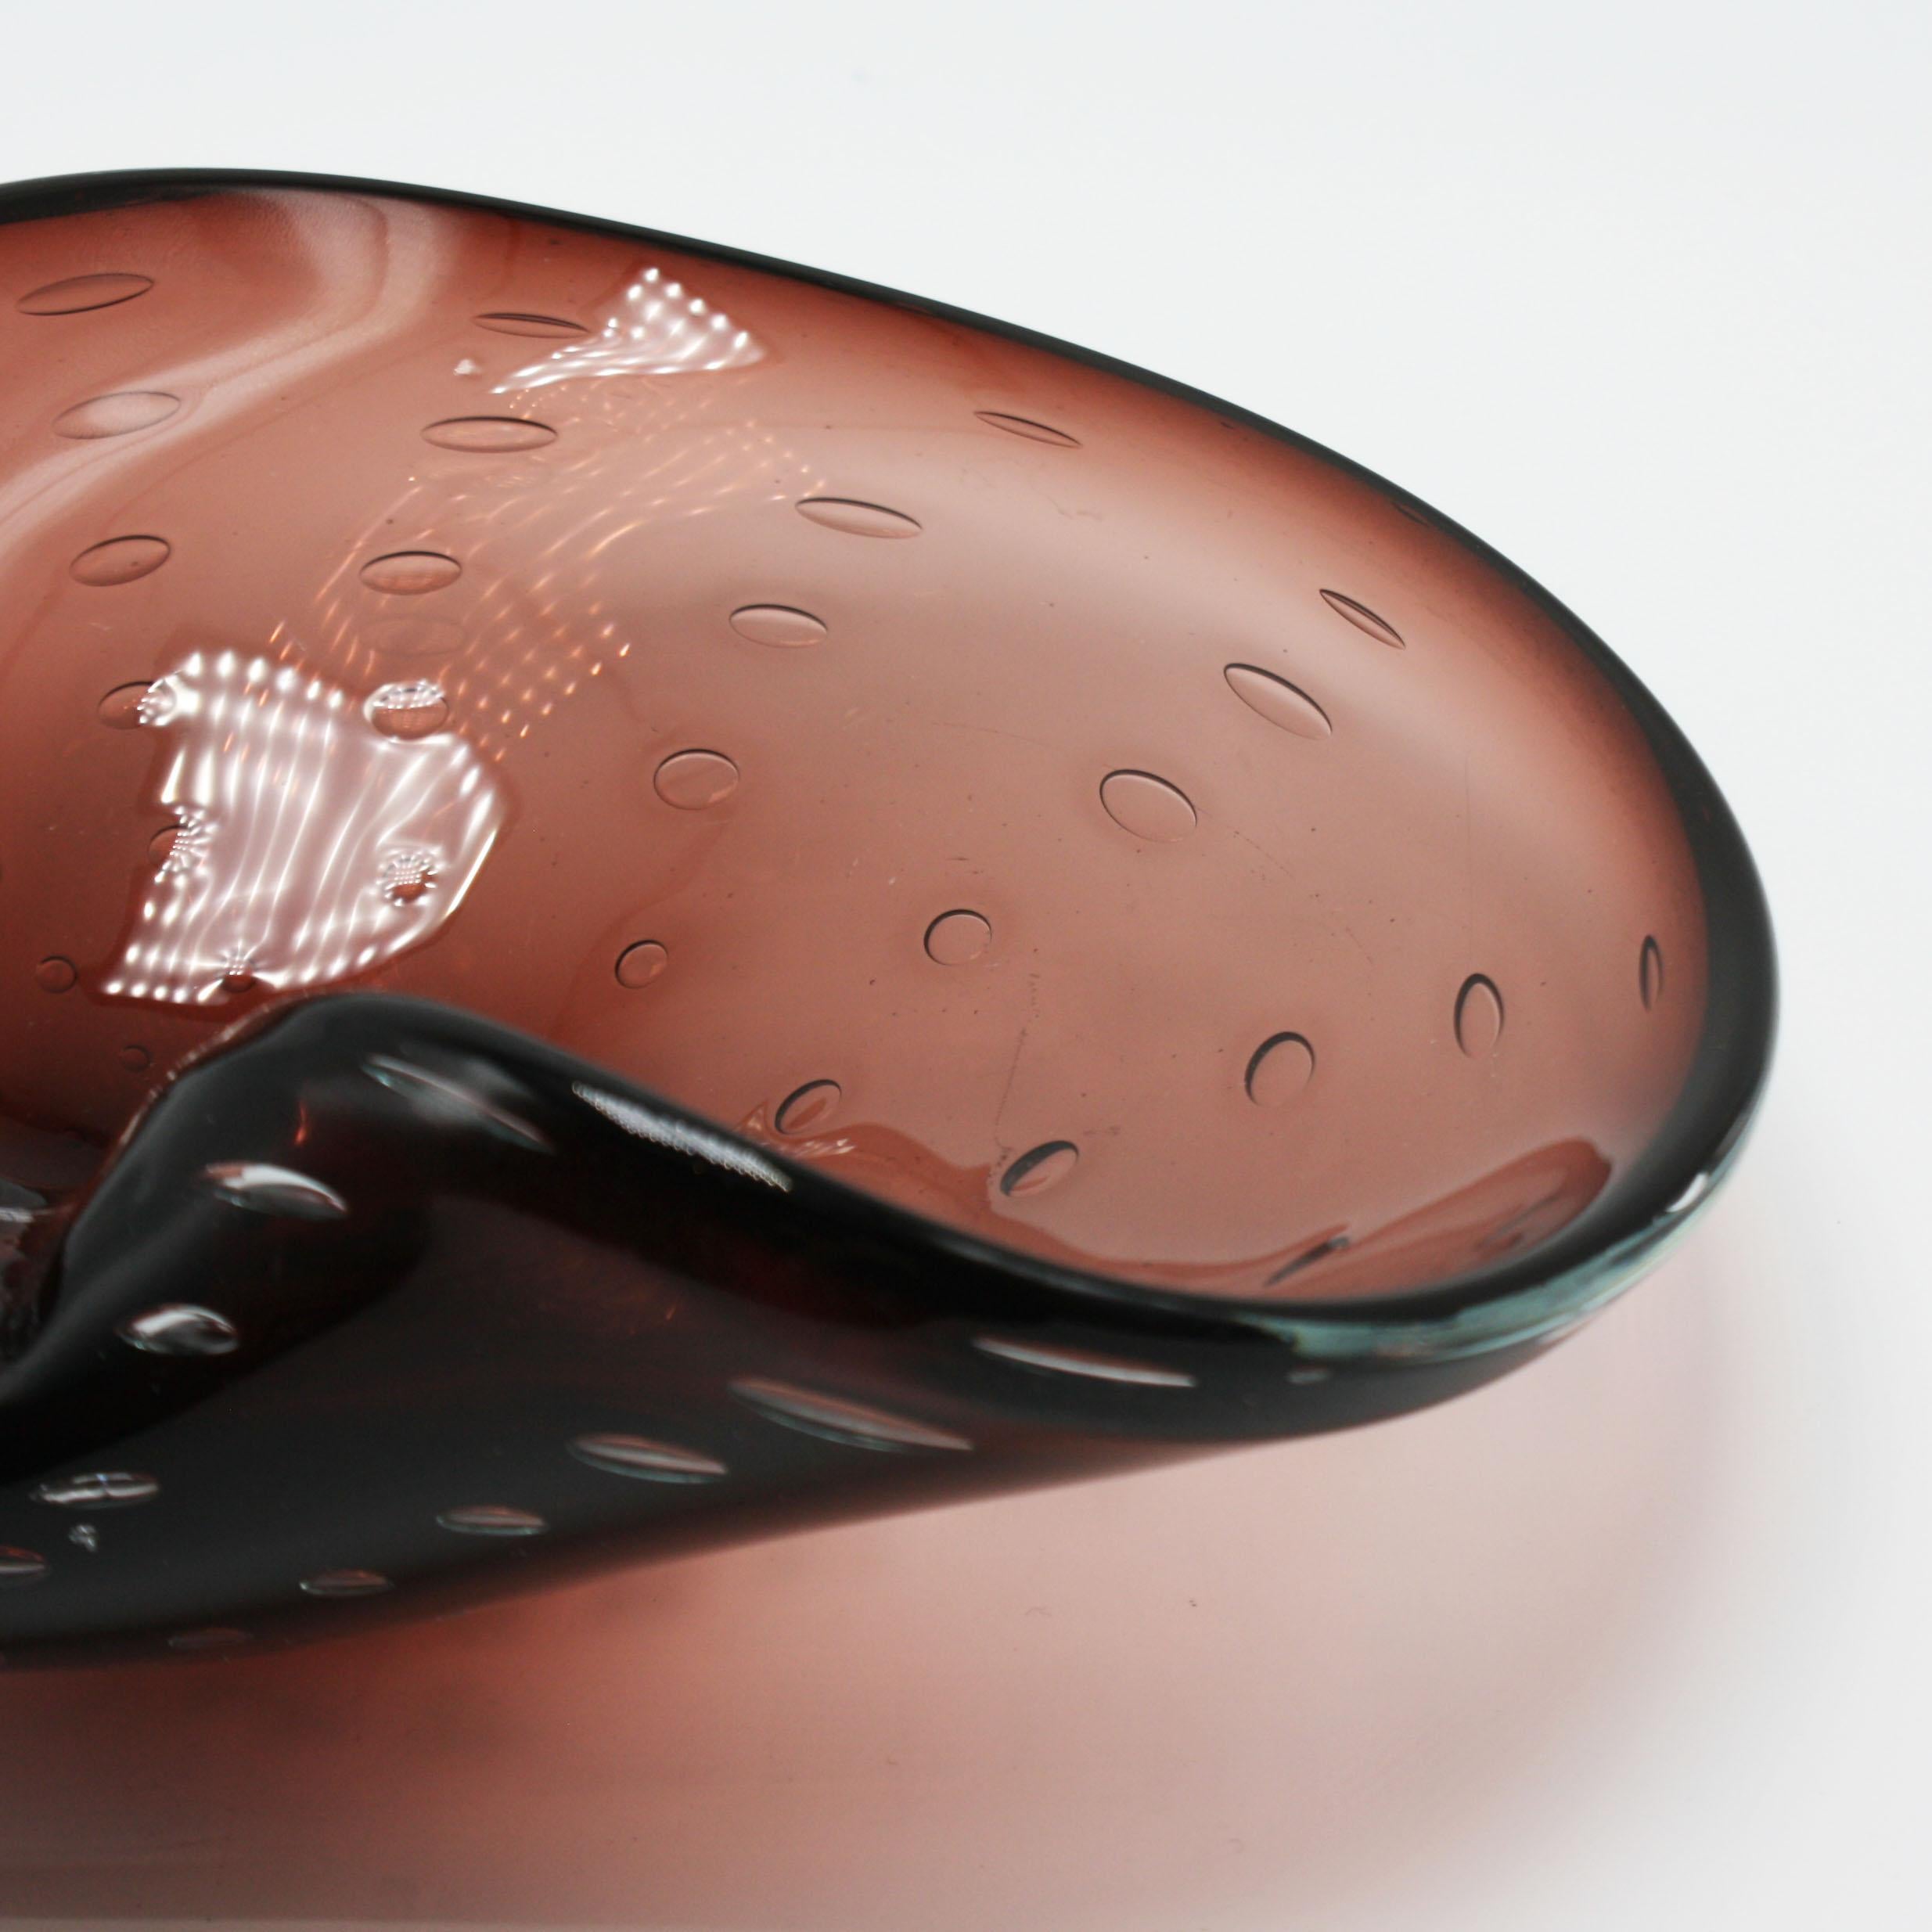 Amethyst Murano Glass Bowl with Bubble Inclusions, circa 1950 (Muranoglas)